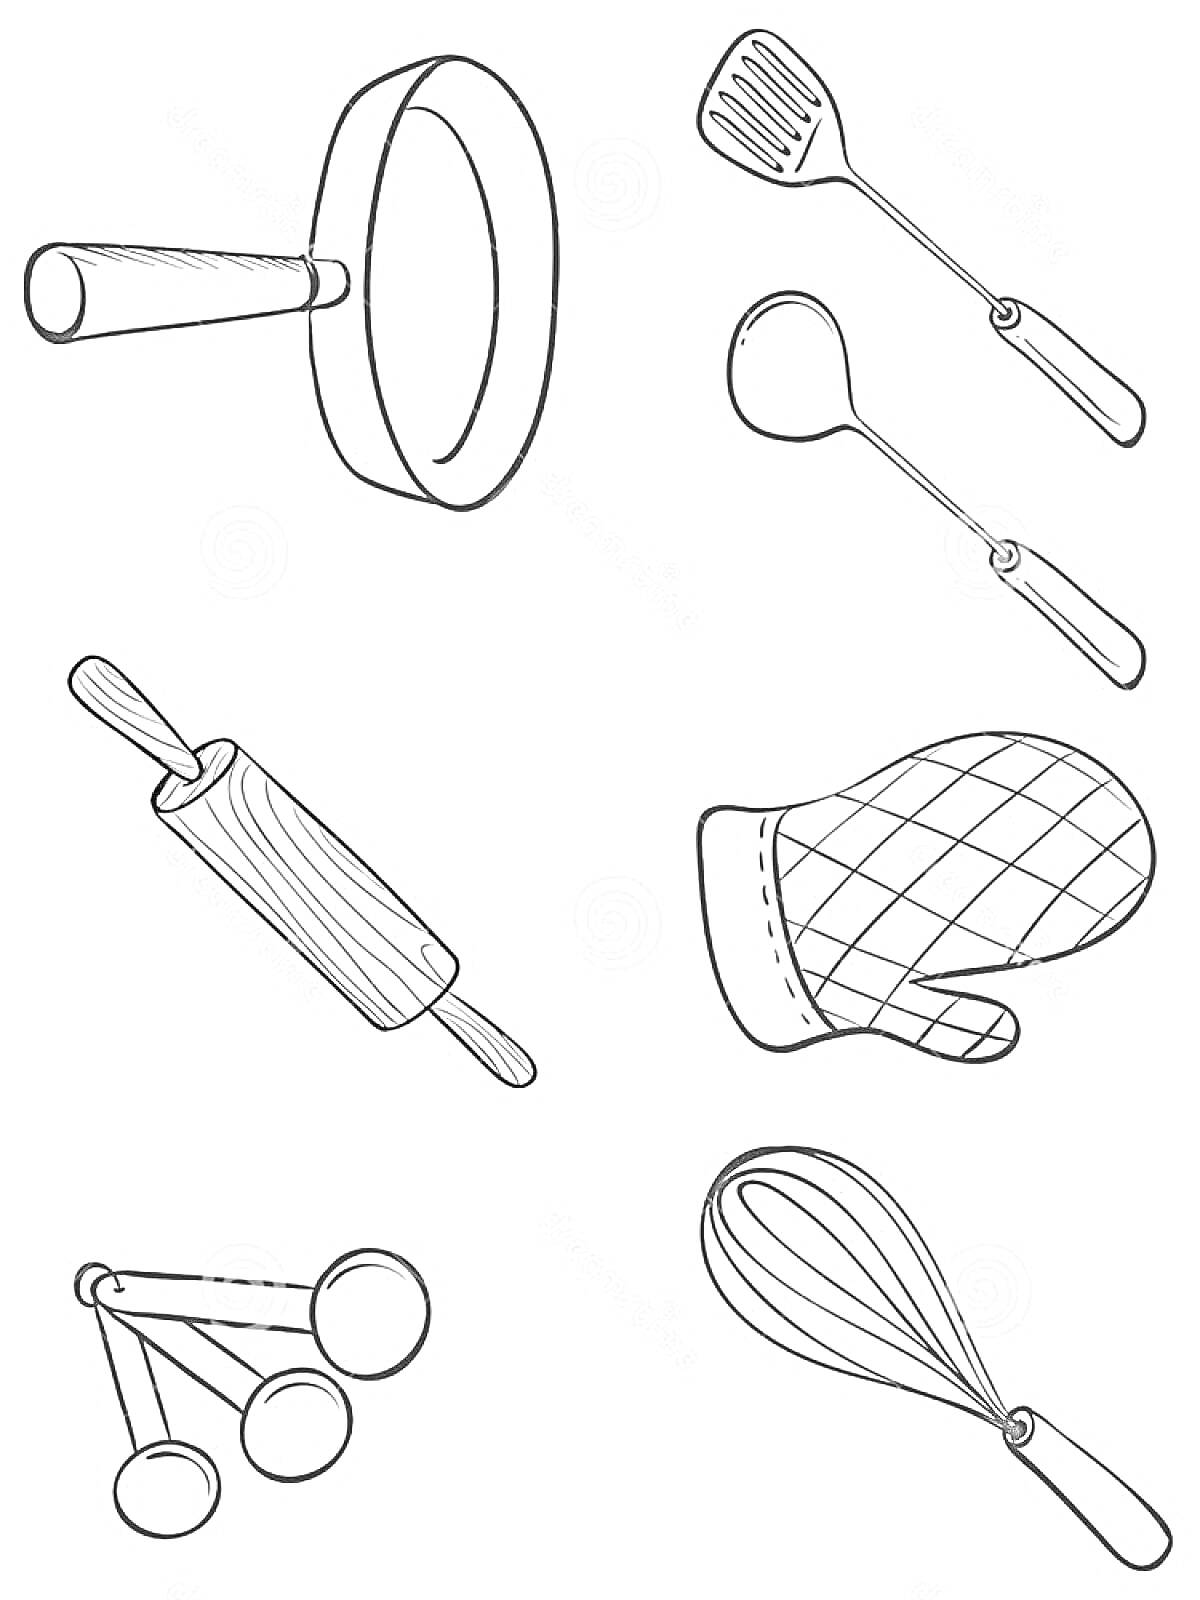 Раскраска Кухонные принадлежности (сковорода, лопатка, половник, скалка, прихватка, мерные ложки, венчик)